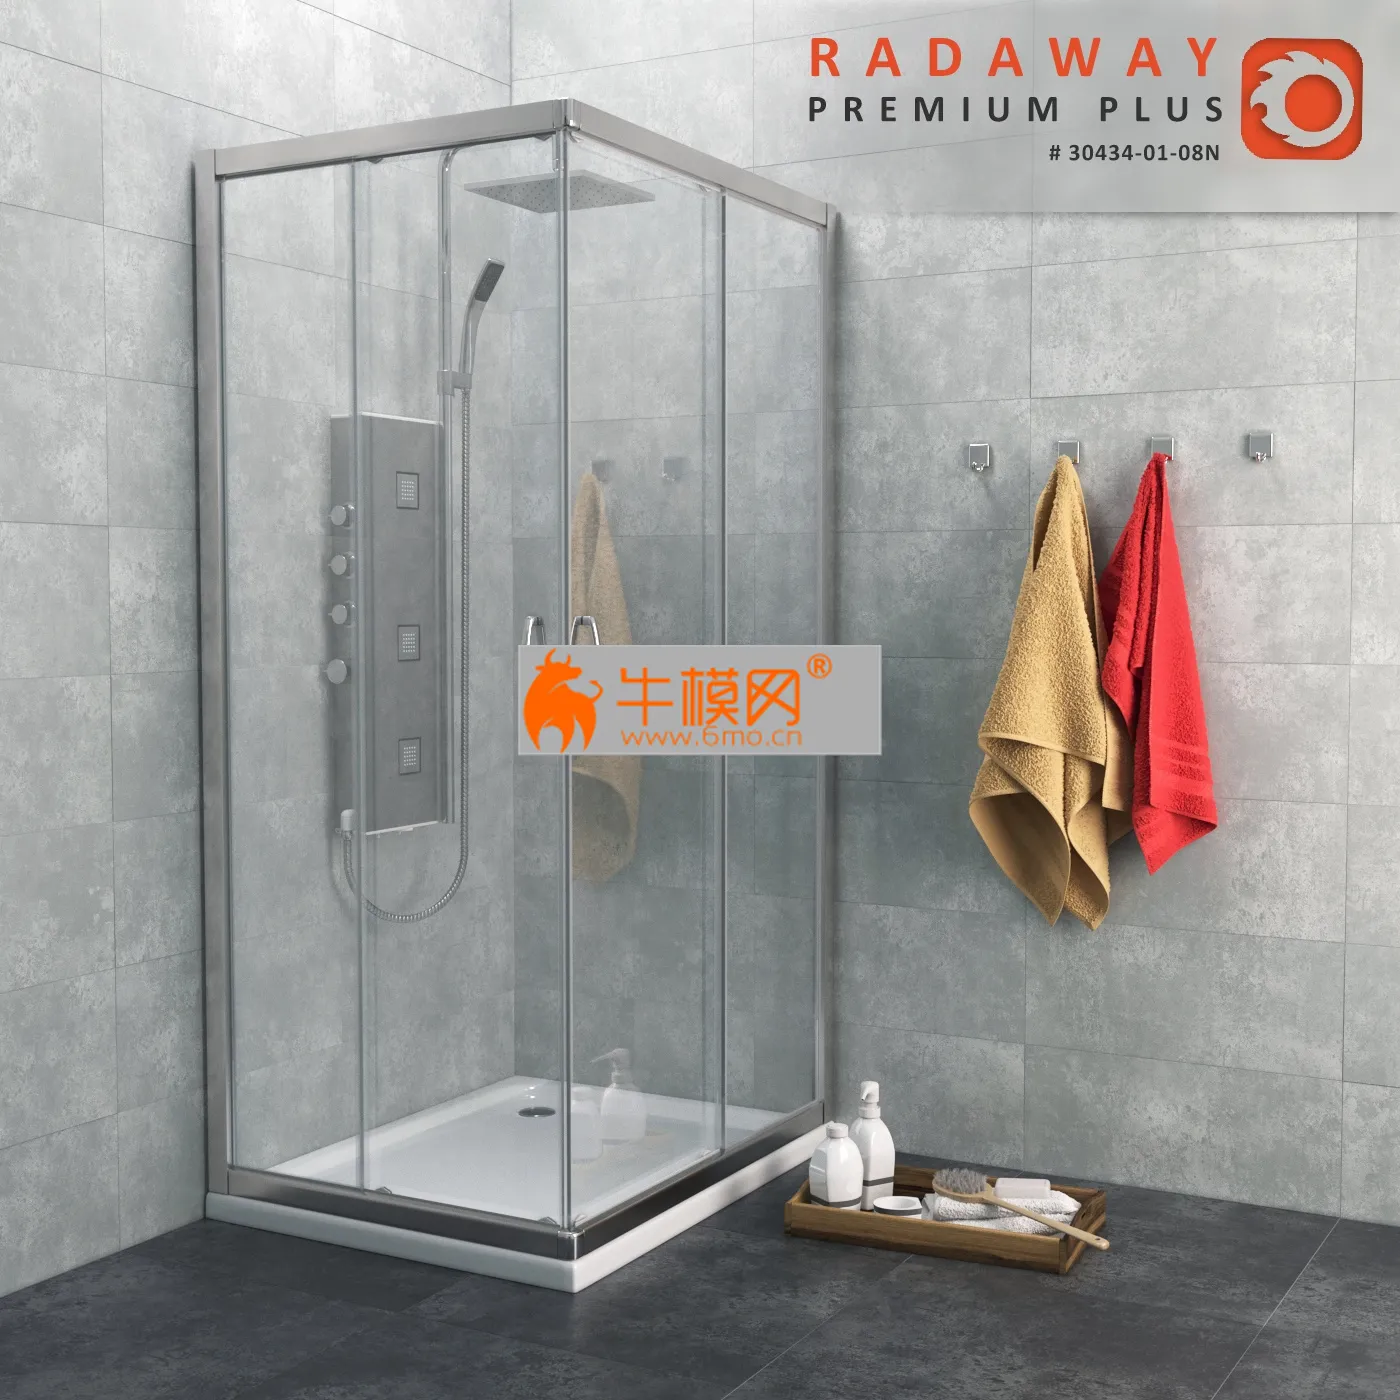 Radaway Premium Plus C – 2608